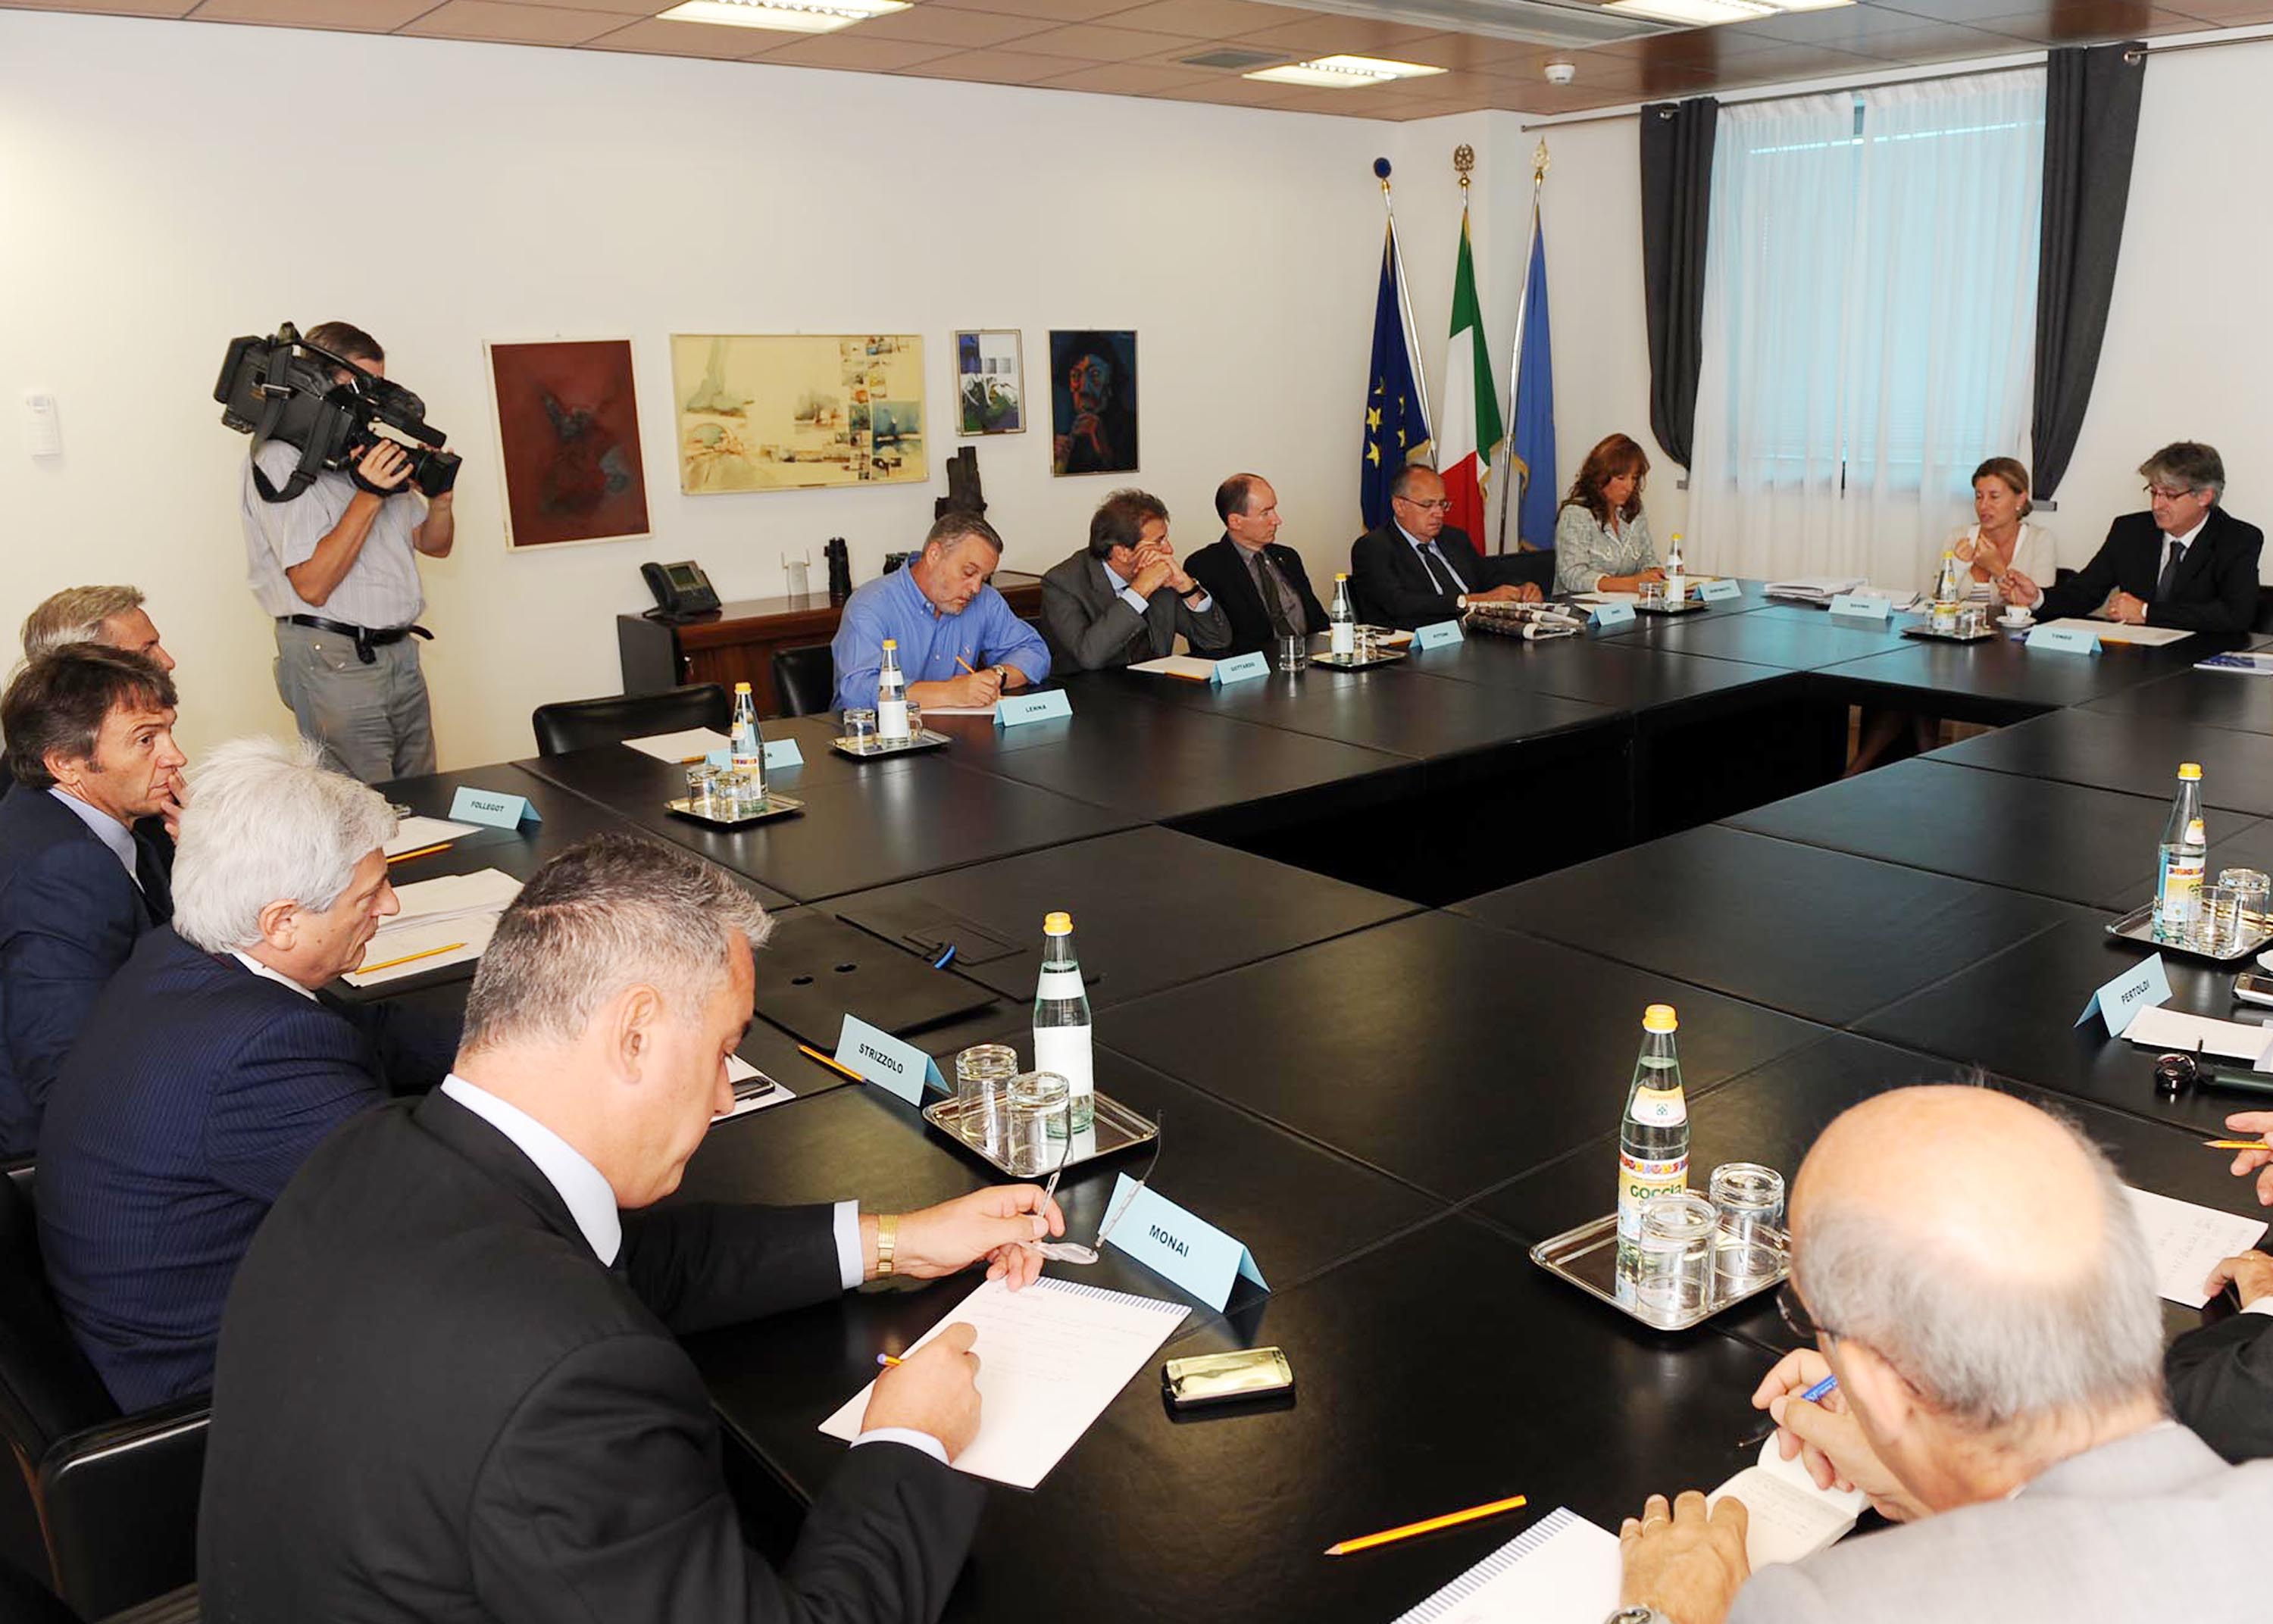 Il tavolo dell'incontro tra il presidente del Friuli Venezia Giulia Renzo Tondo e i parlamentari eletti per il FVG nella XVI legislatura della Repubblica italiana. (Udine 25/09/09)  